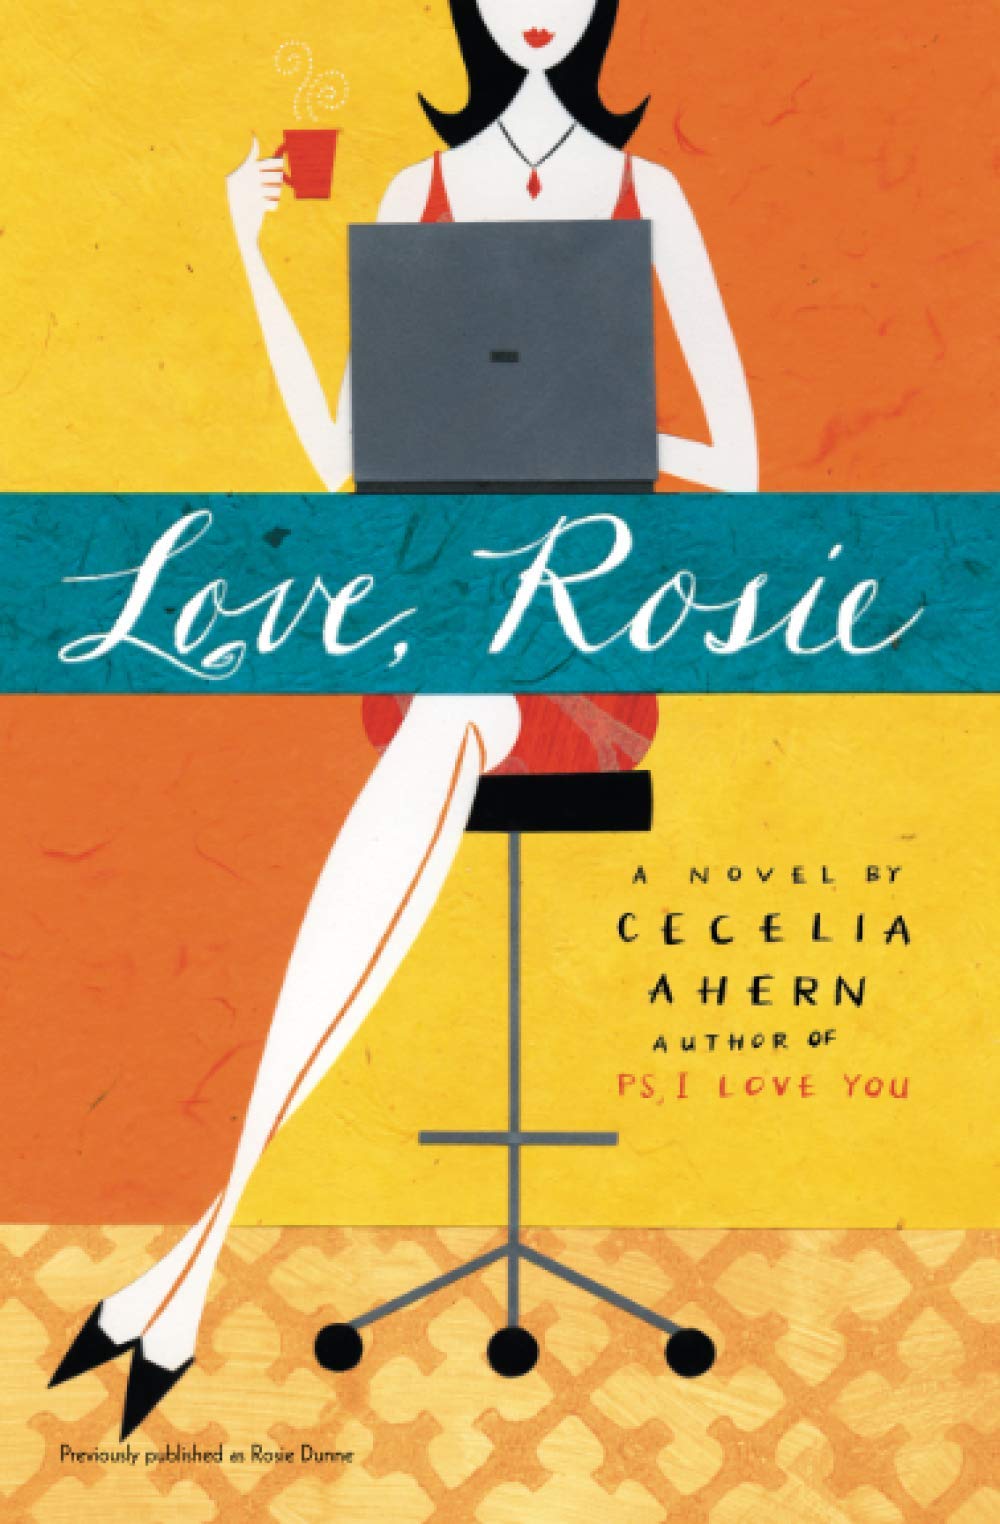 Coperta cărții: Love, Rosie - lonnieyoungblood.com